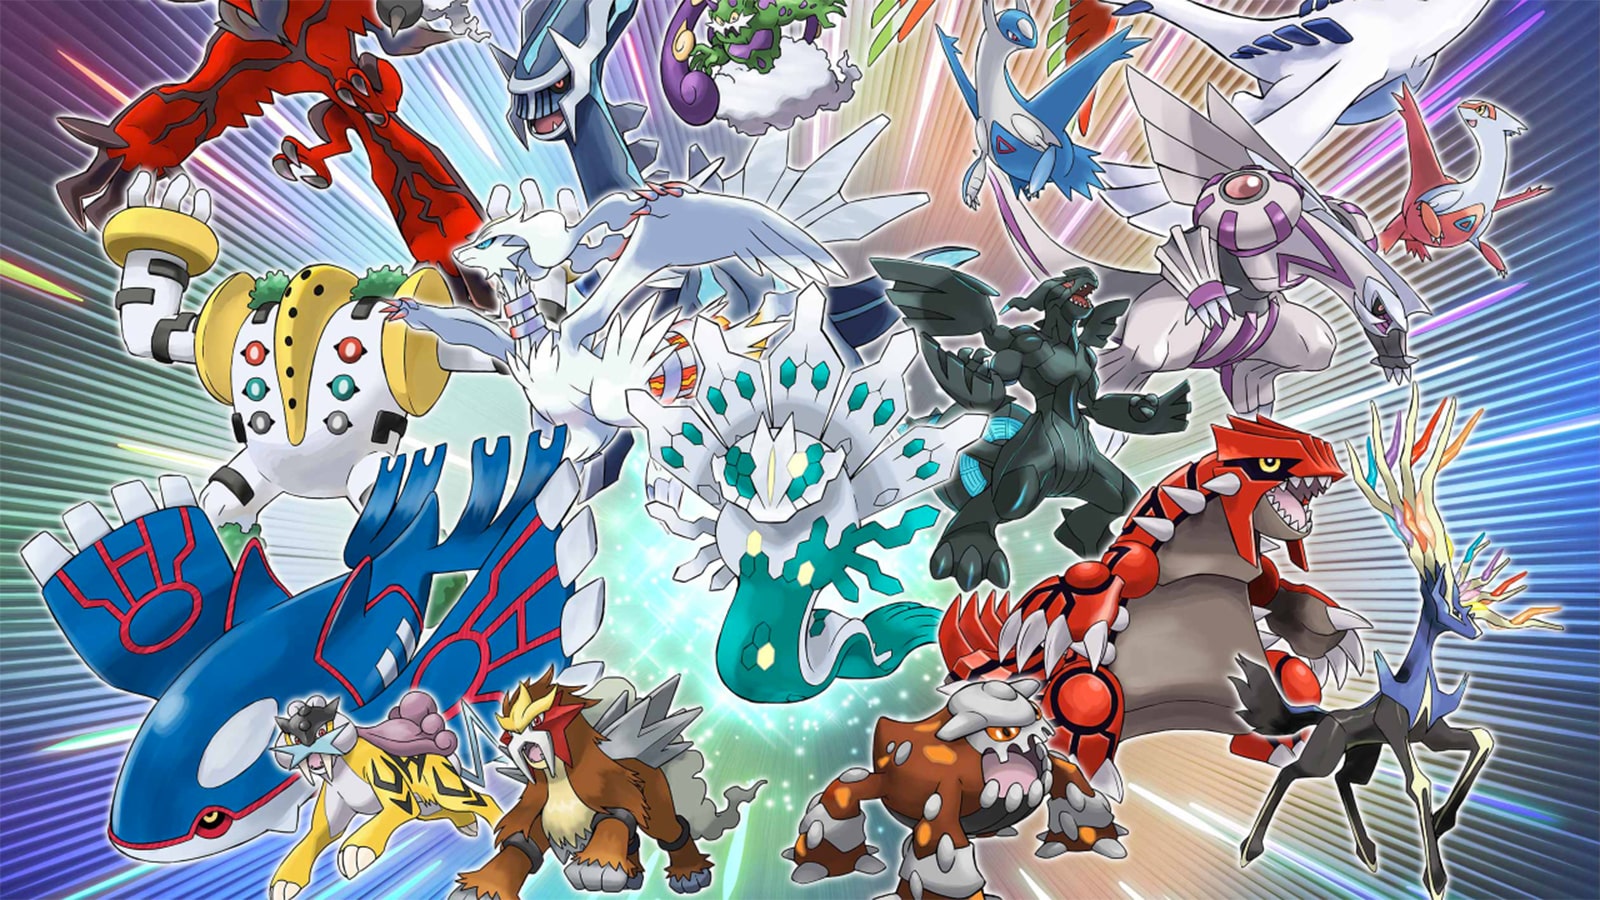 Μια αφίσα που περιέχει όλο το θρυλικό Pokemon